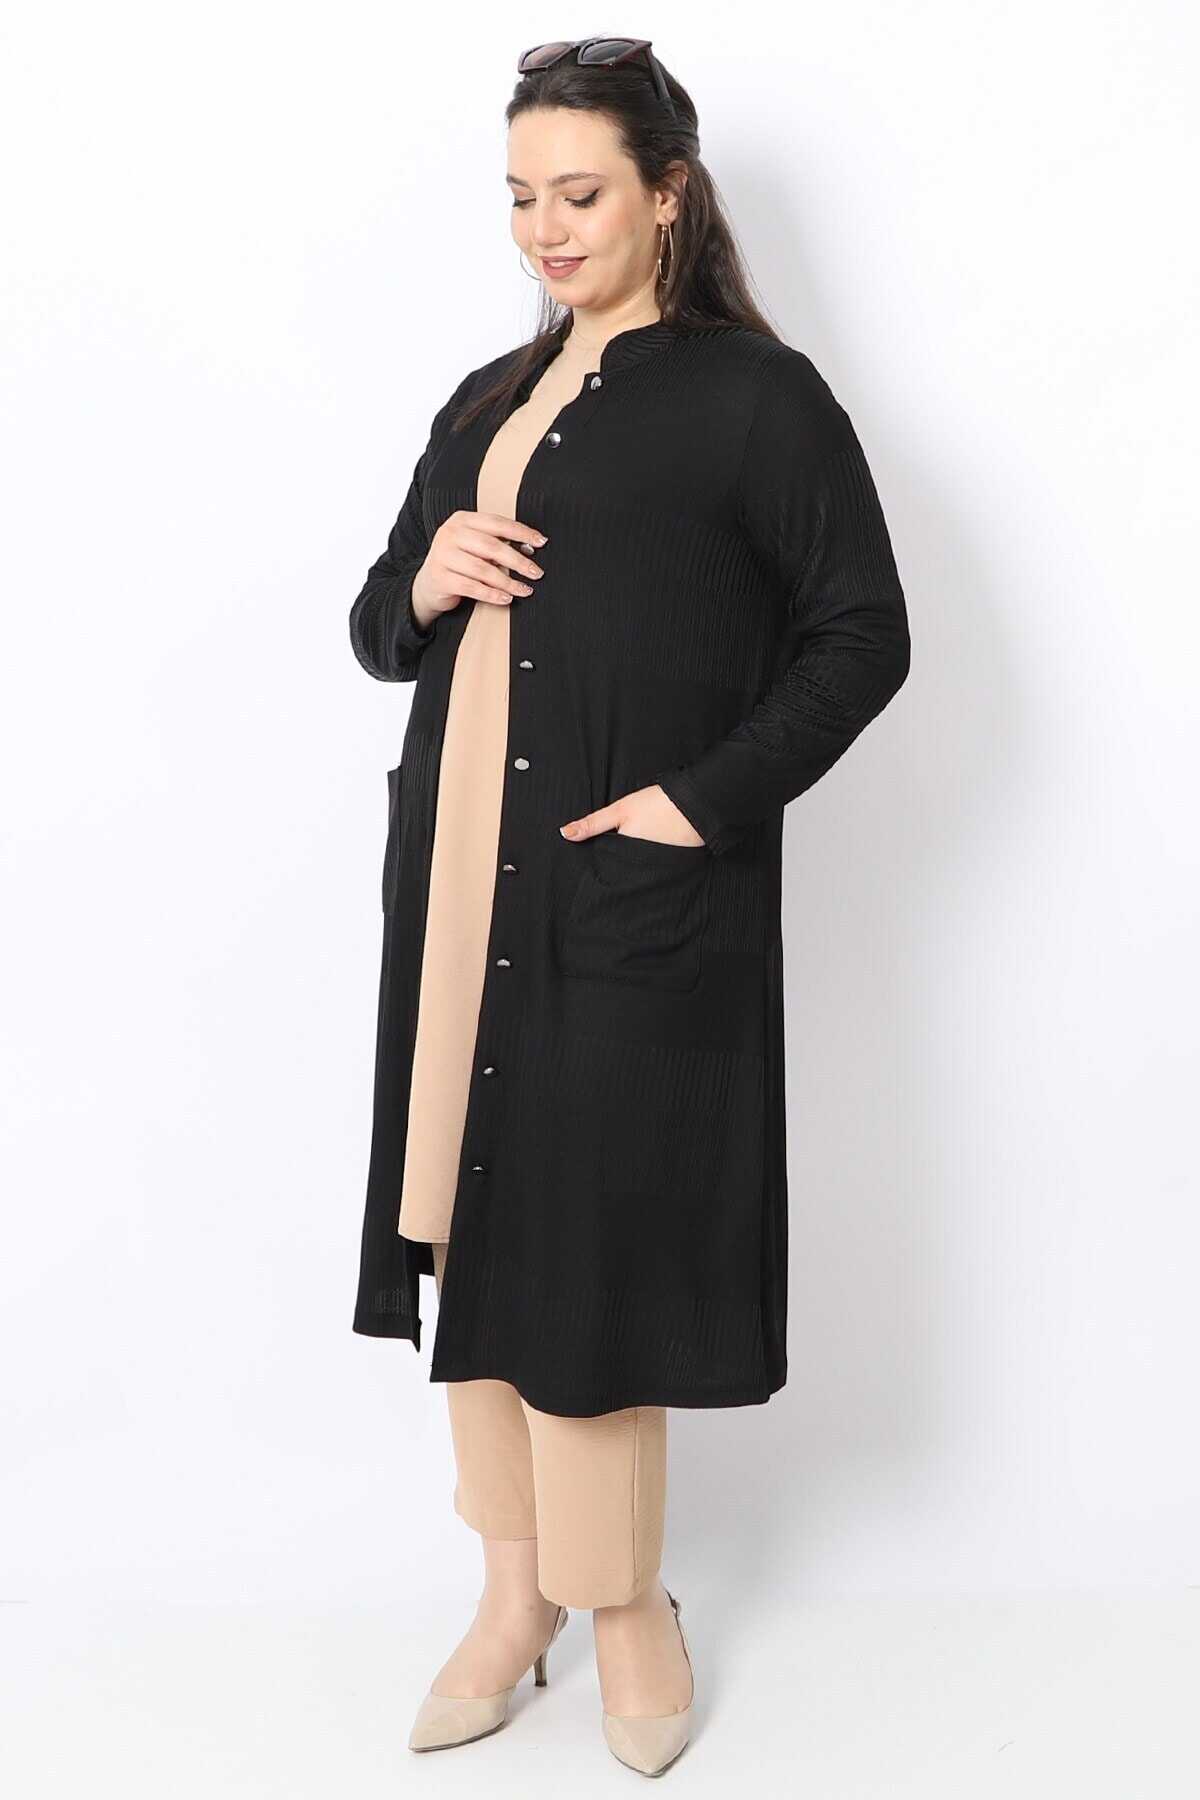 ژاکت کشباف بلند جیب دار دکمه دار سایز بزرگ زنانه مشکی برند KadoModa 